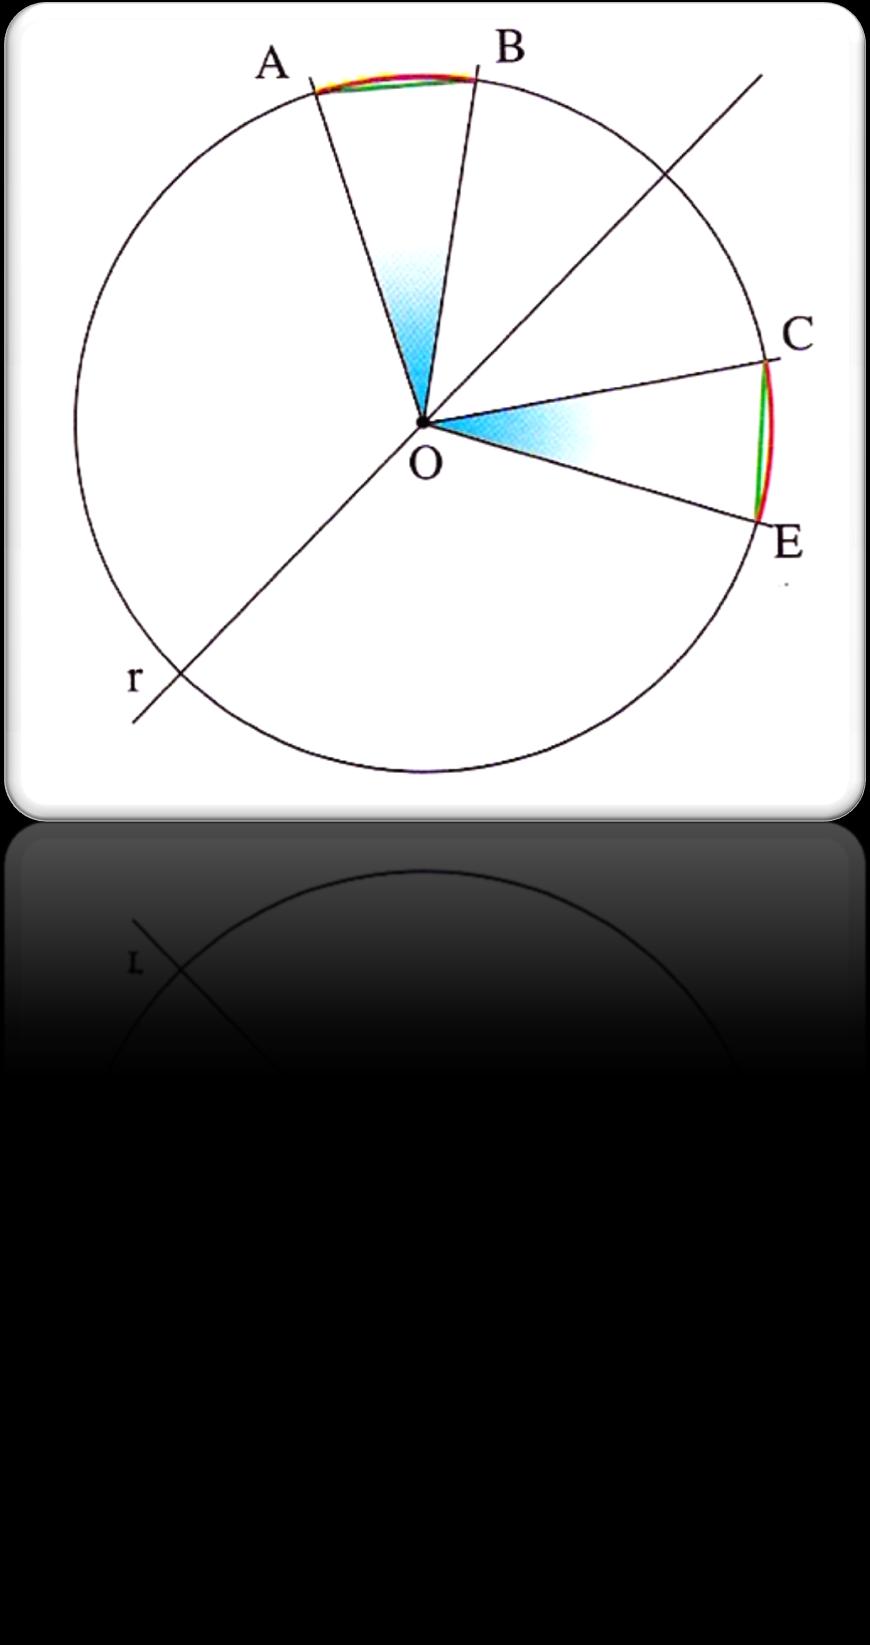 Igualdade de arcos, cordas e ângulos ao centro correspondentes Observa a figura, onde o arco AB é simétrico do arco CE, em relação à recta r.